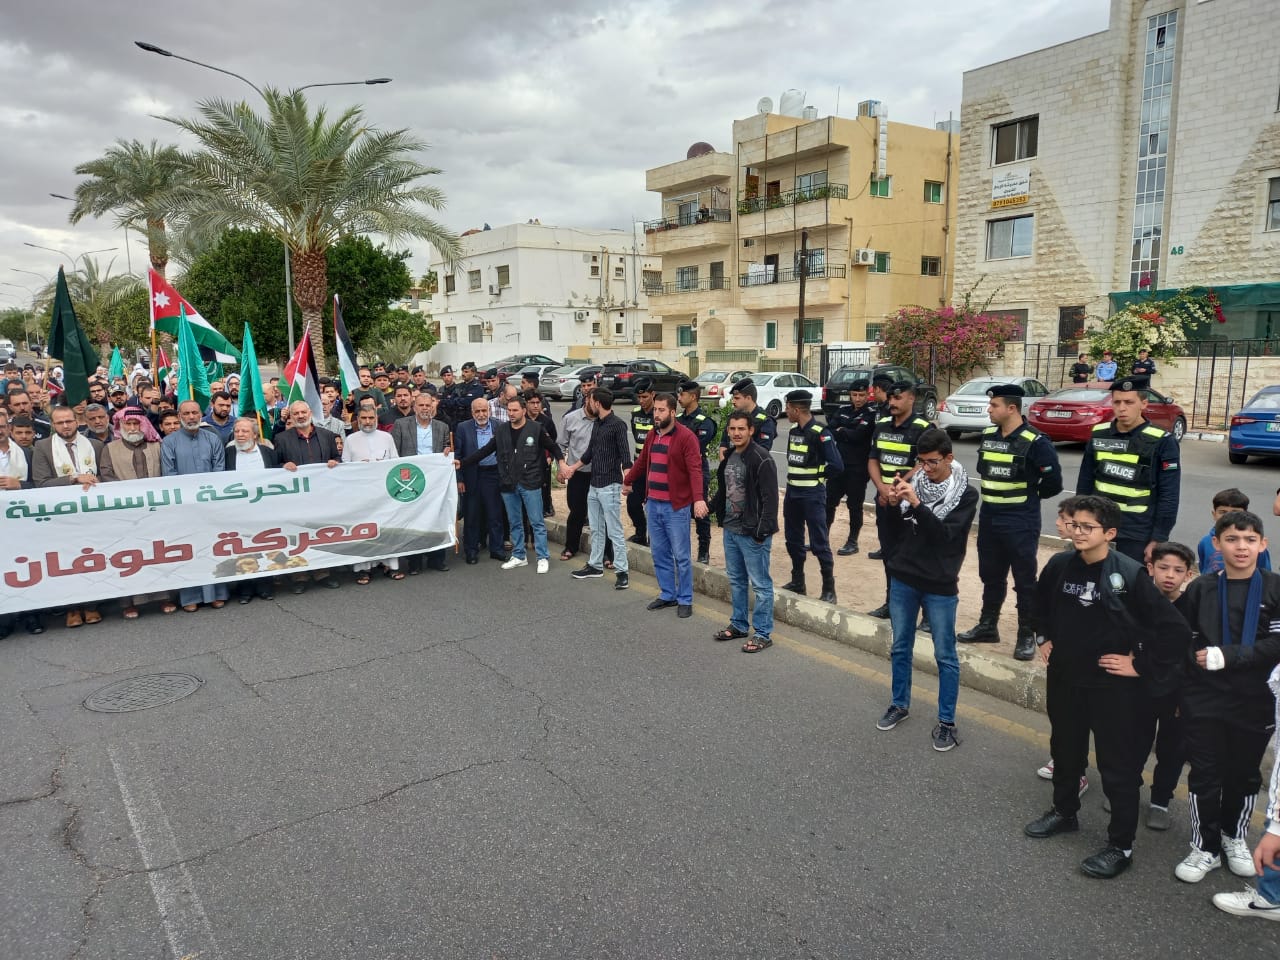 المئات في العقبة : يا تجار الذل والعار للصهيوني تصدرو خضار - صور وفيديو